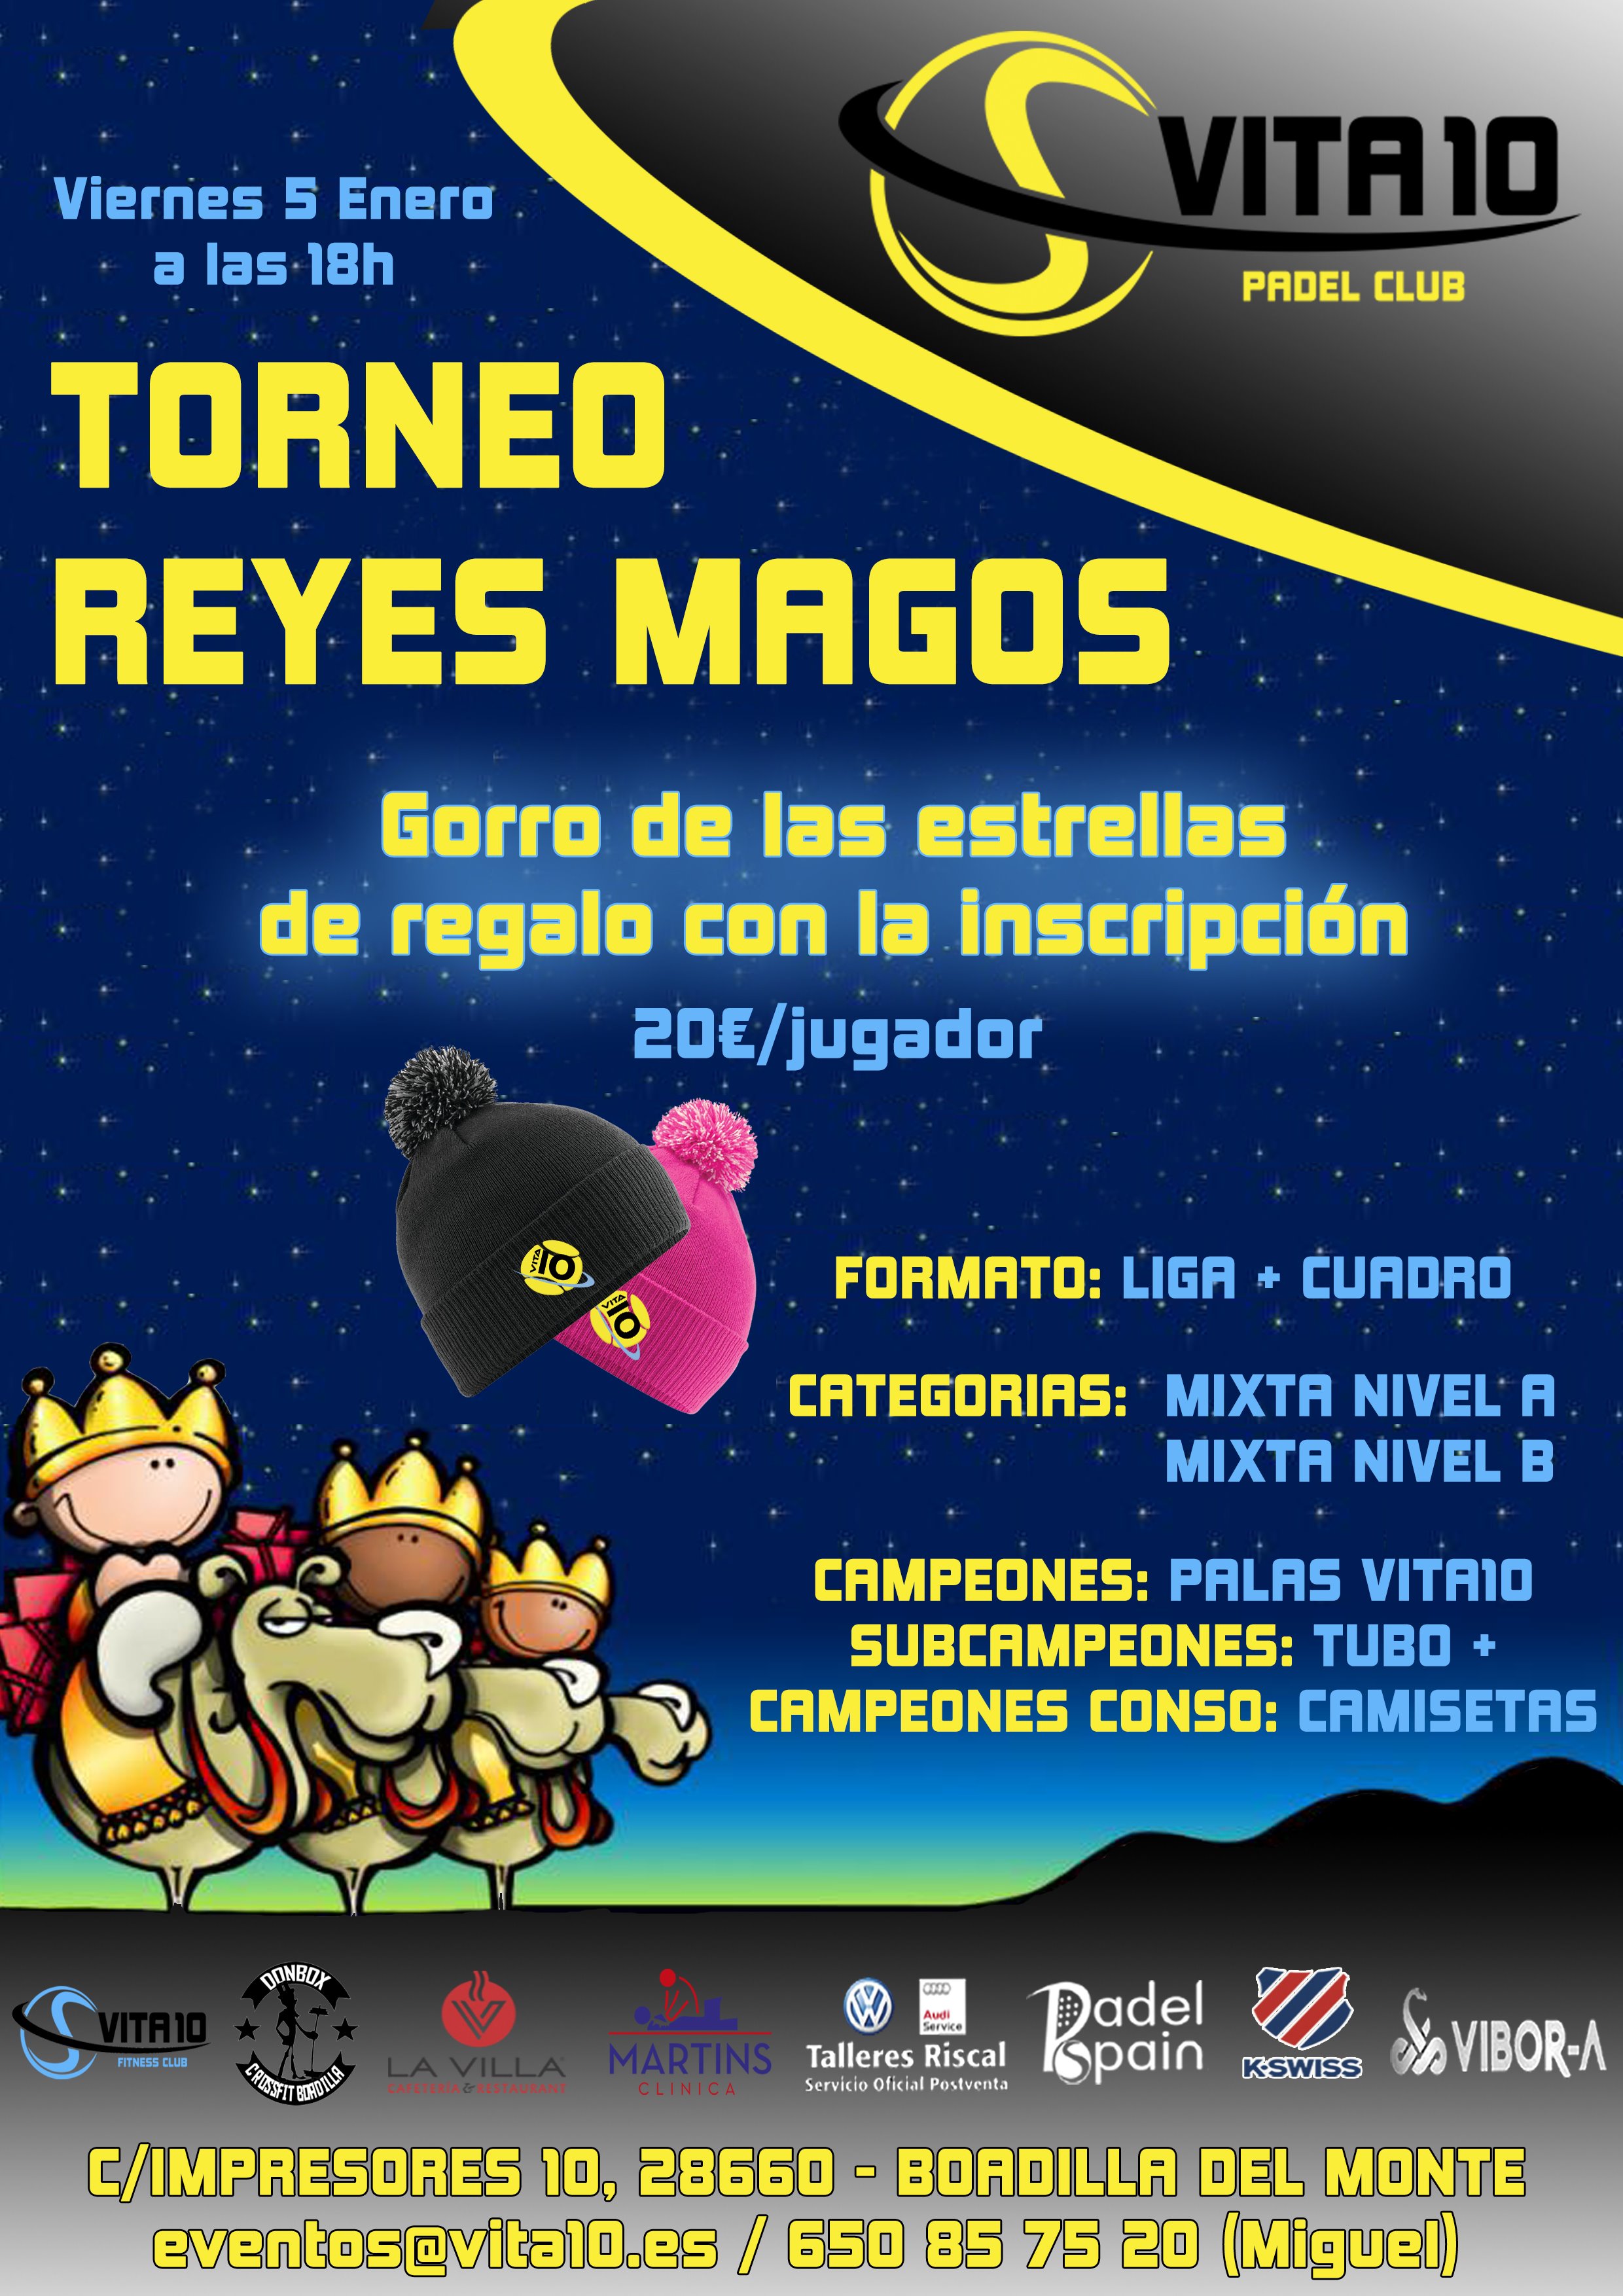 Torneo Reyes Magos 2018 Vita10